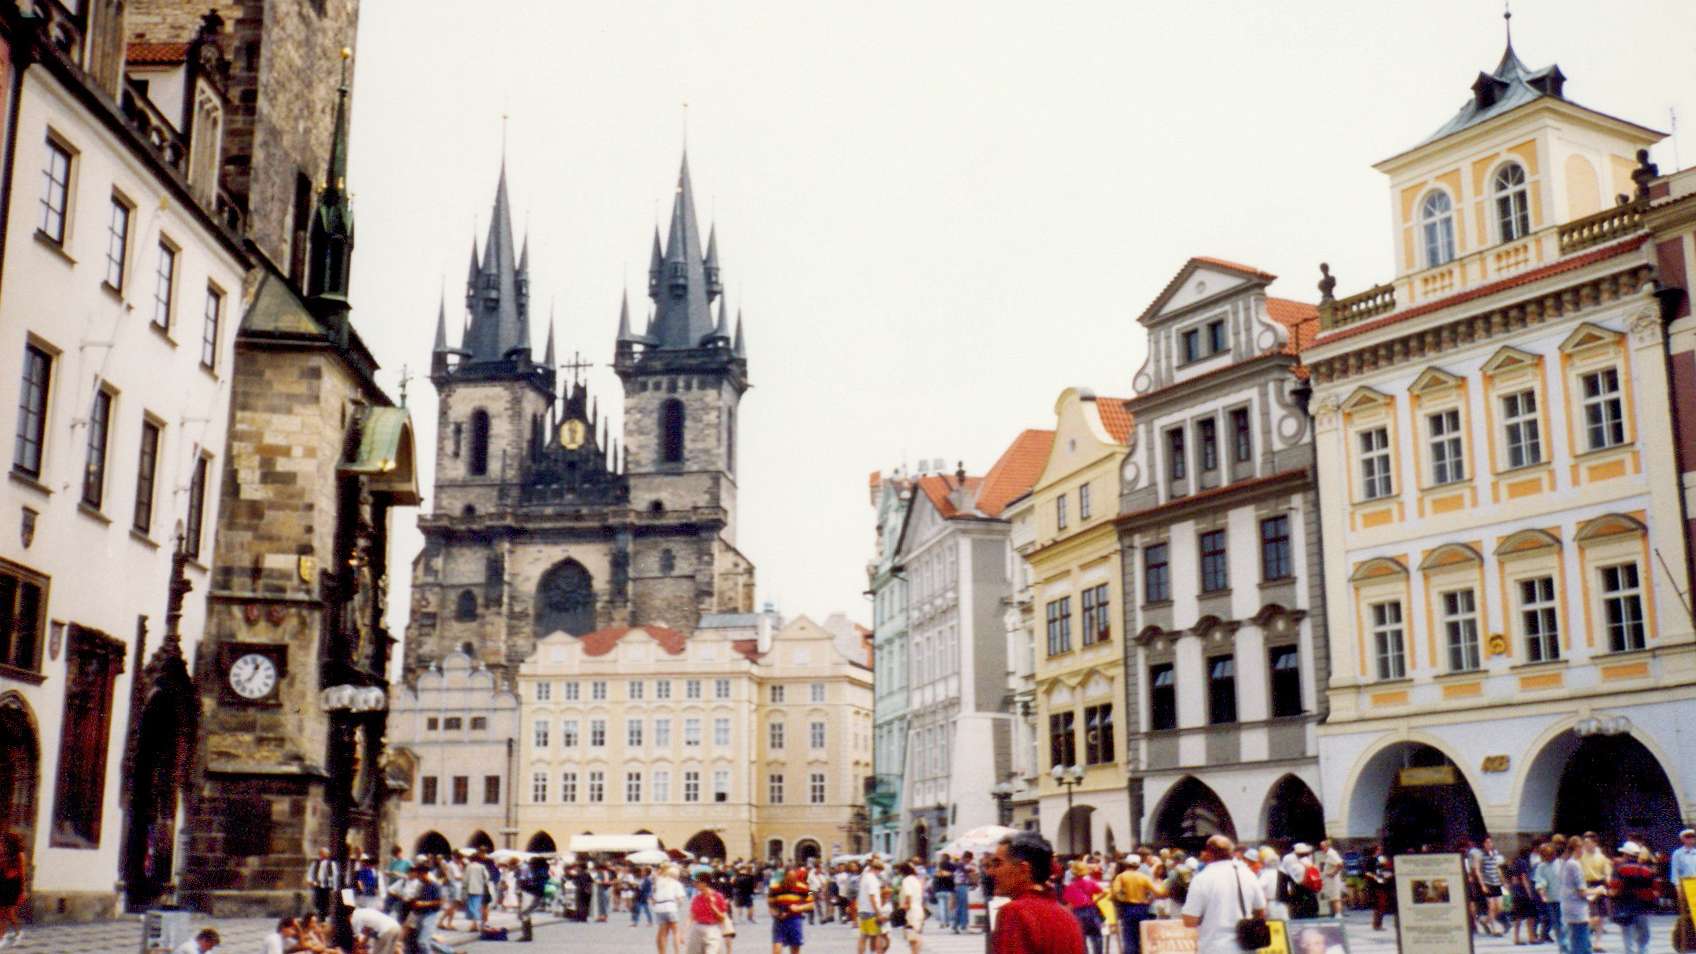 Praha | Staroměstské náměstí with Kostel Matky Boží před Týnem